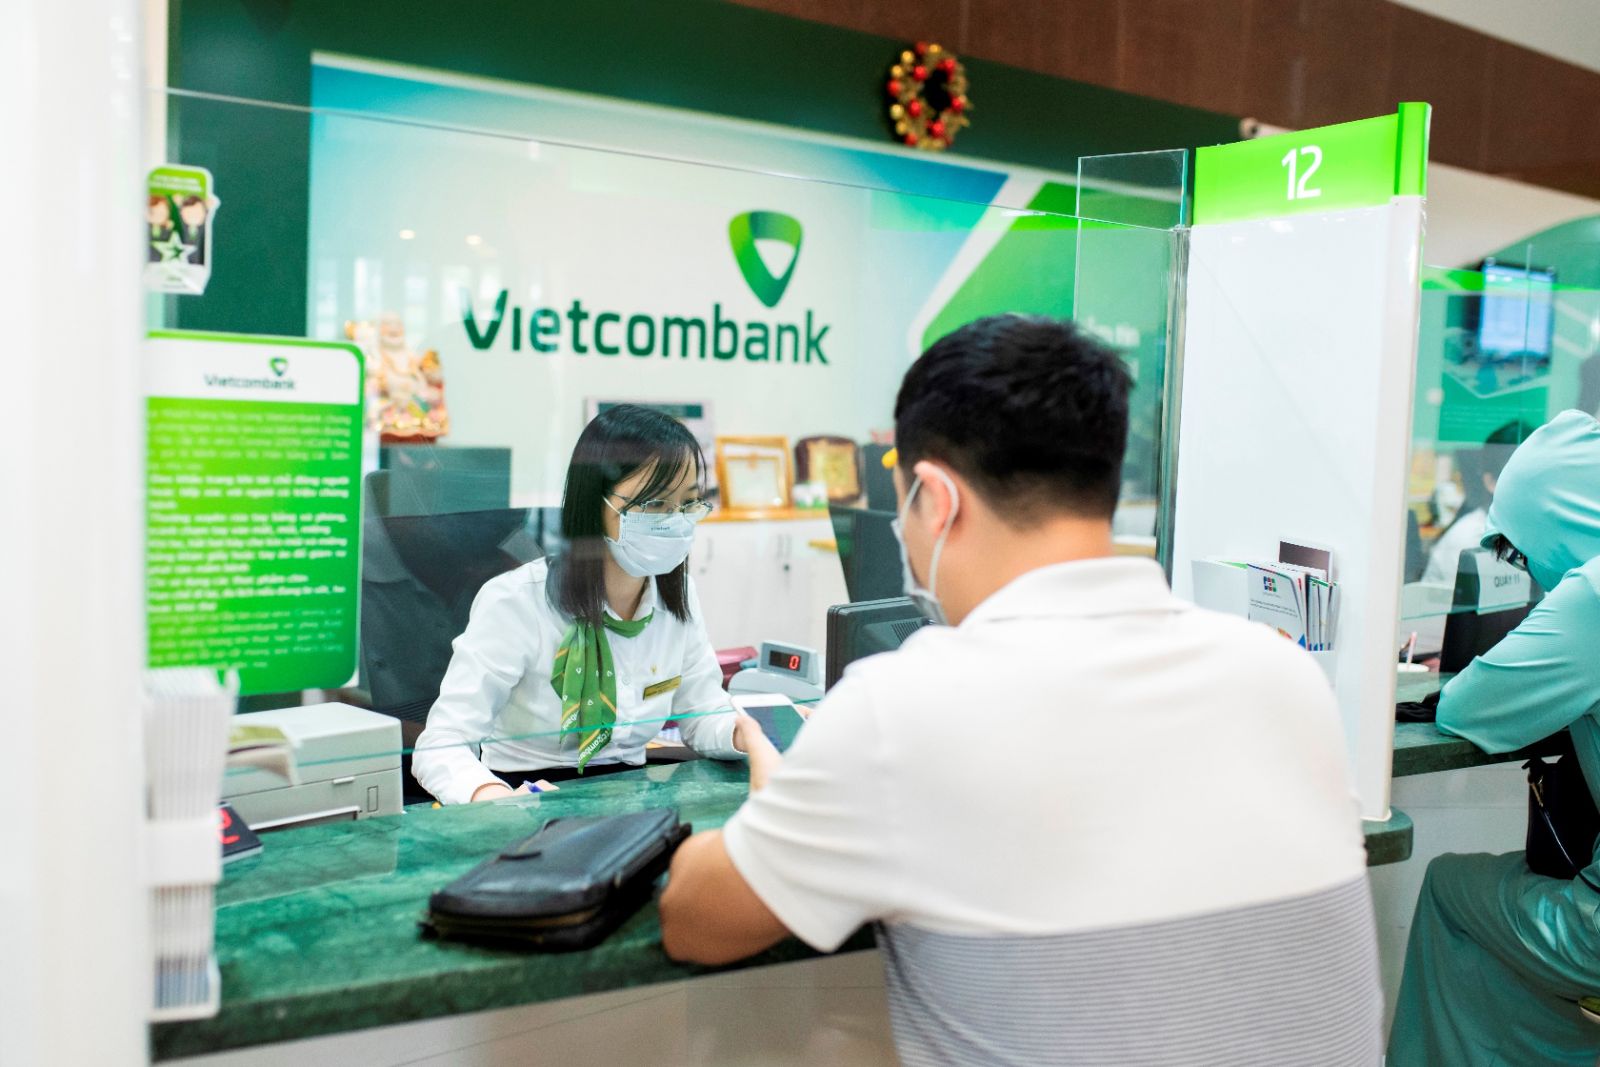 Hình ảnh giao dịch tại Vietcombank trong bối cảnh Covid-19